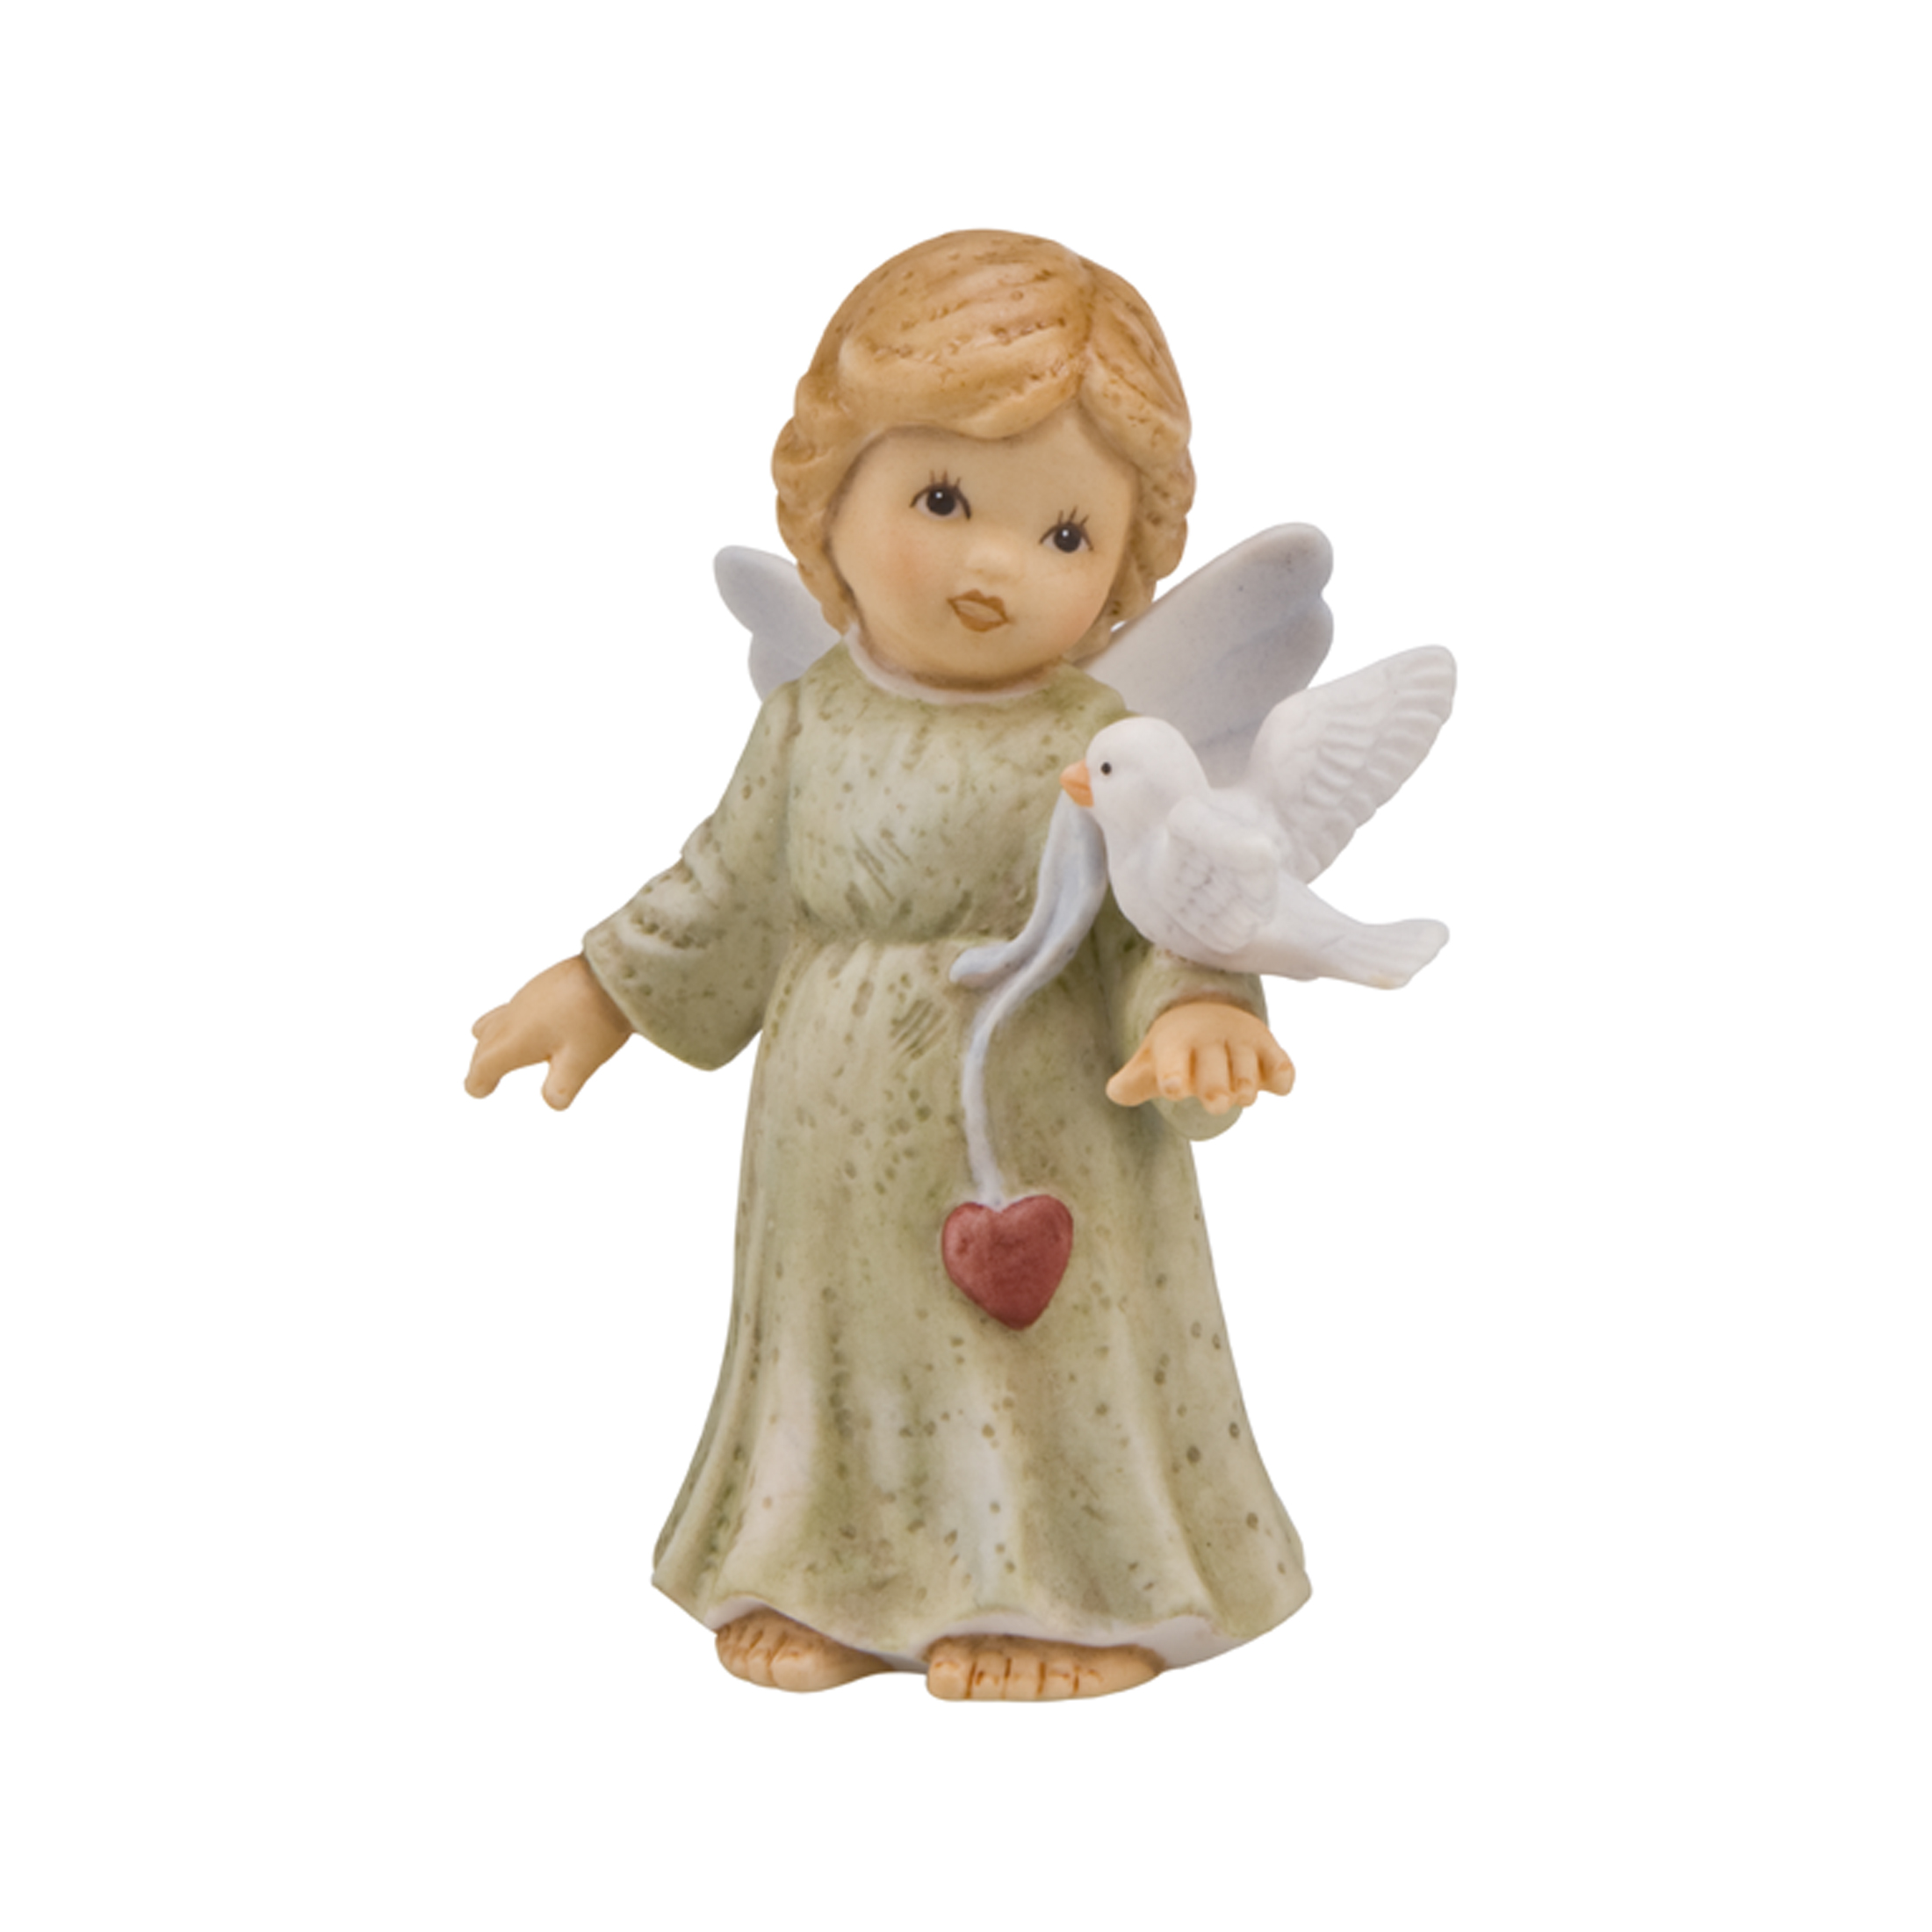 Dekoralia.de - Friedensengel Figur Goebel Neuheit Schutzengel Engel